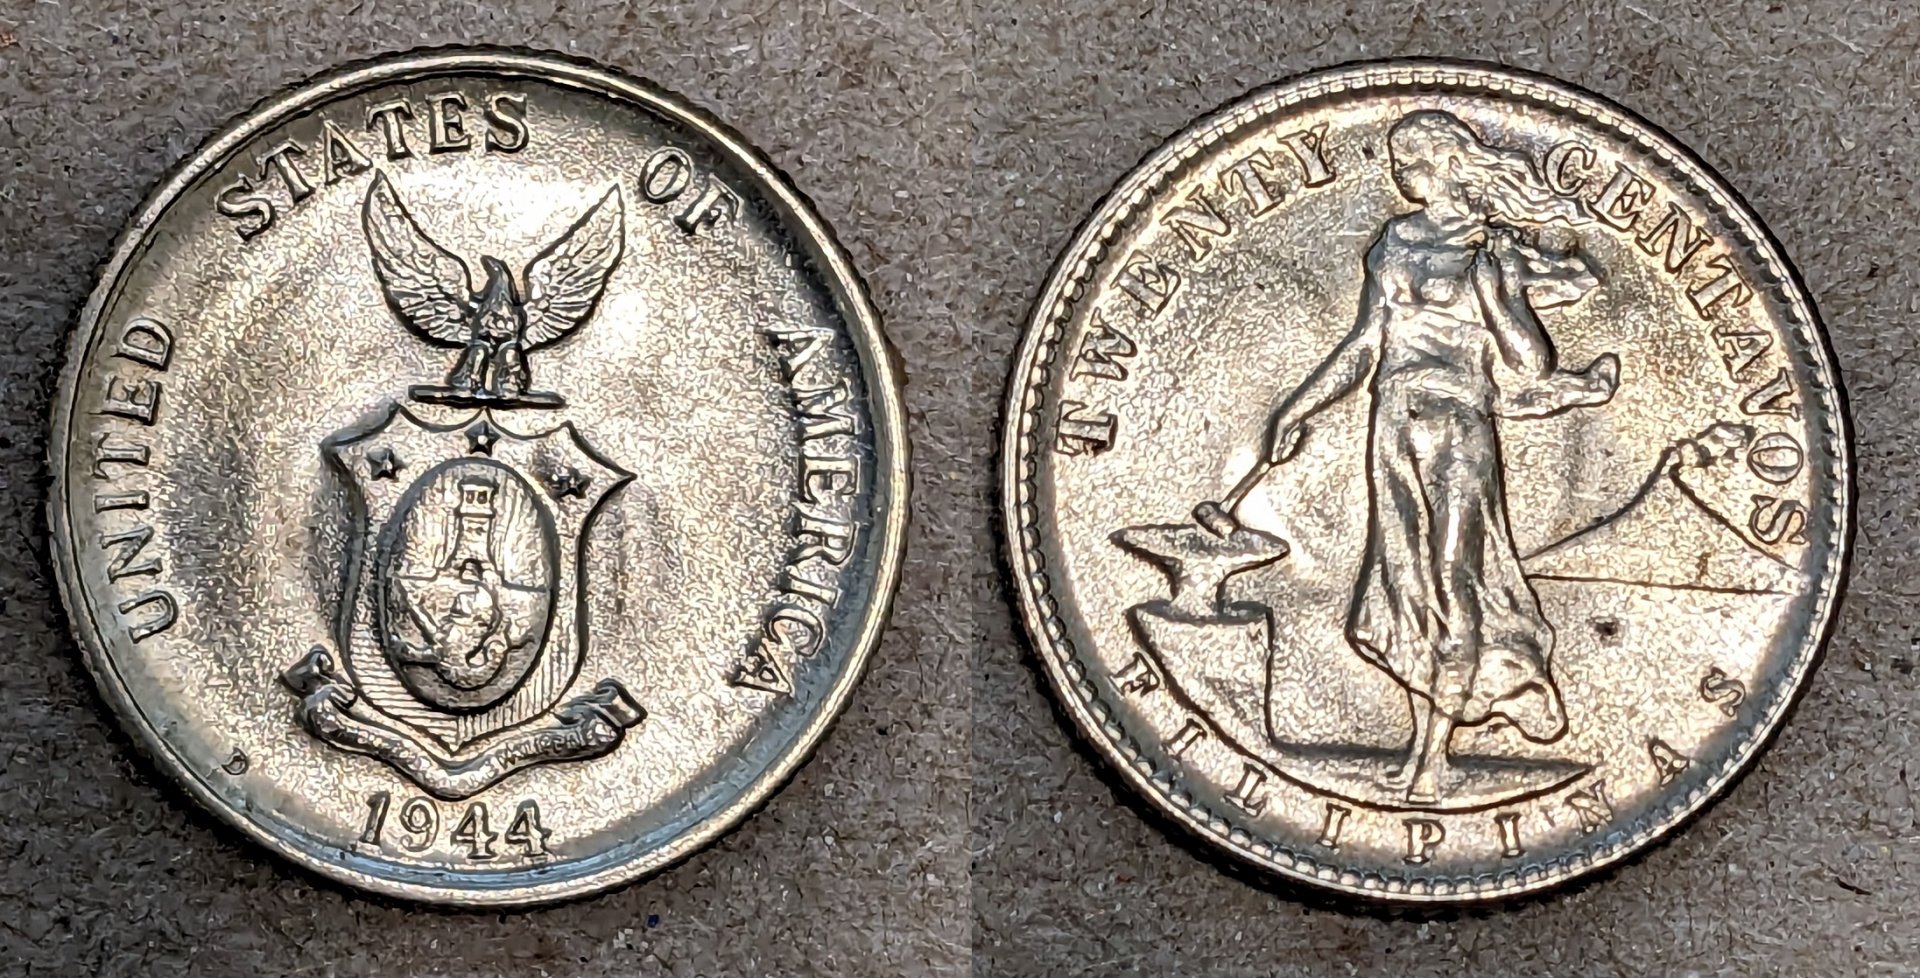 1944 d philippines 20 centavos.jpg